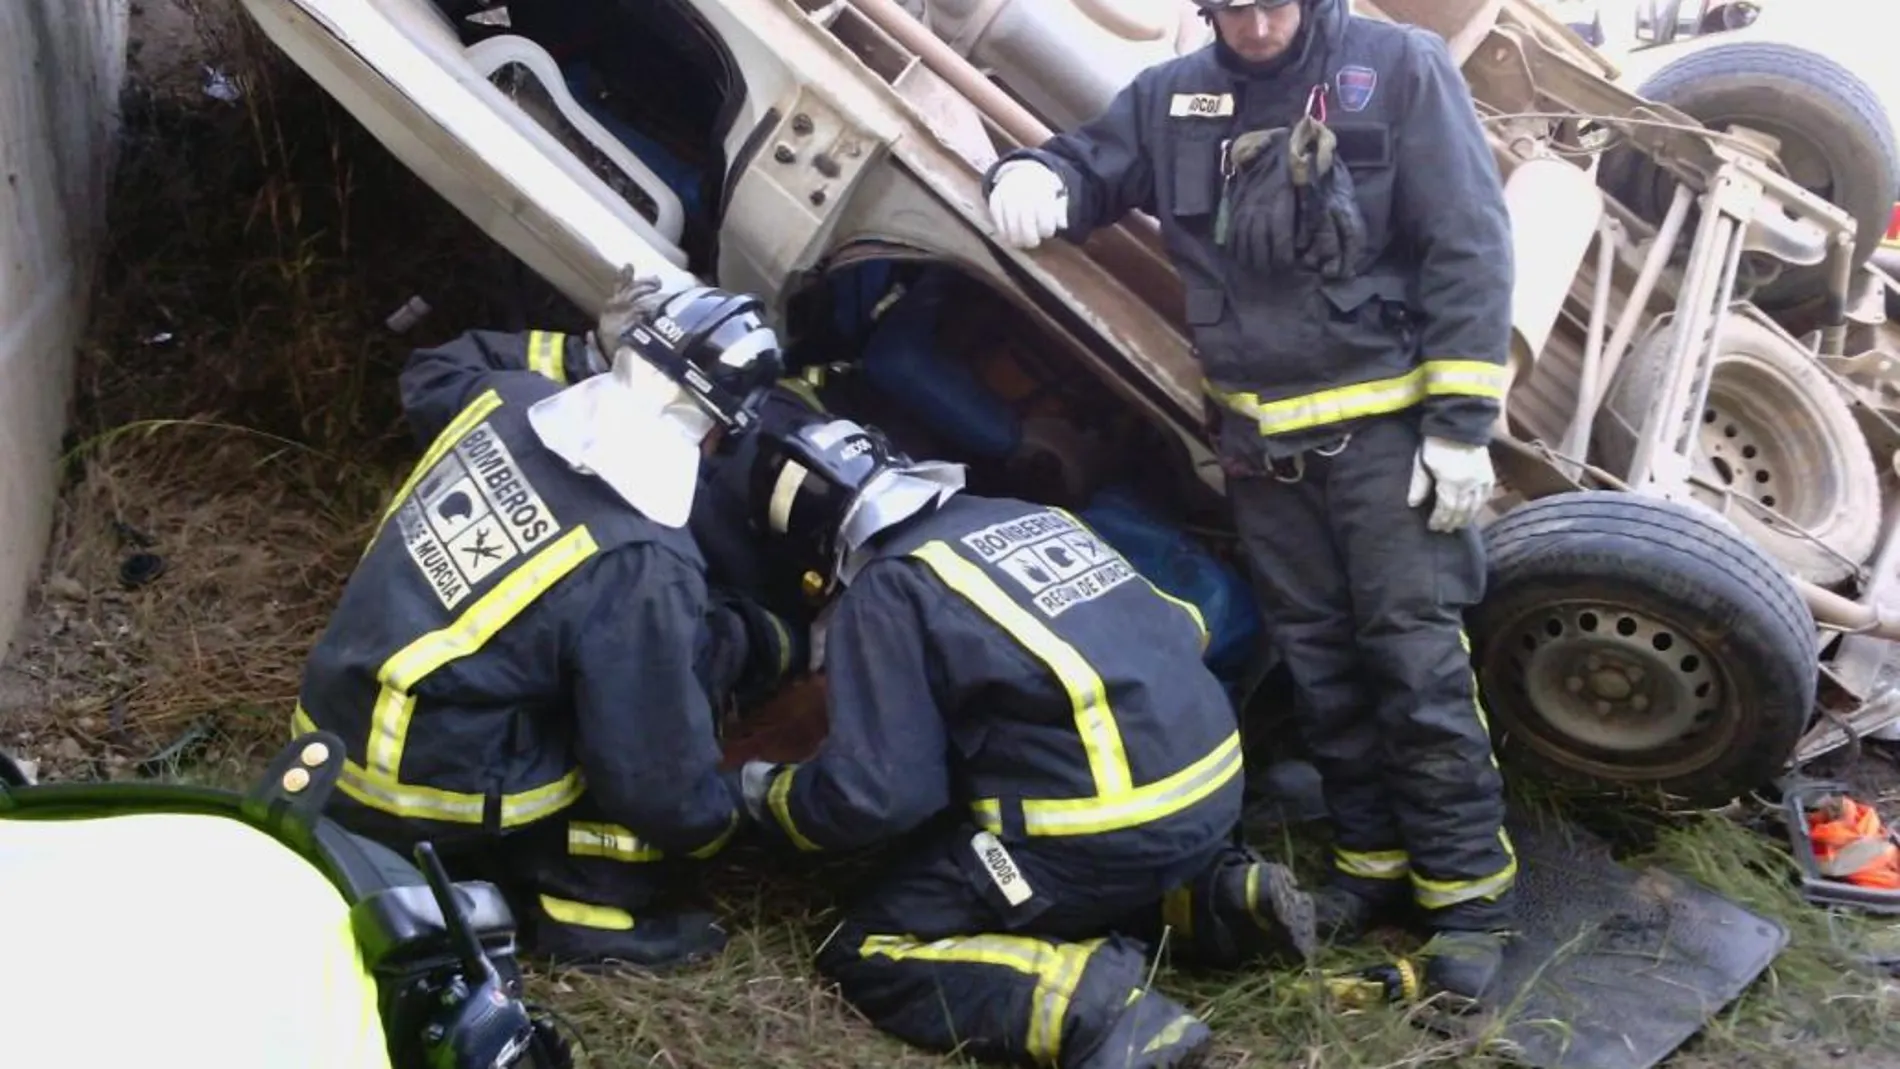 Imagen facilitada por Protección Civil del accidente producido entre Lorca y Águilas